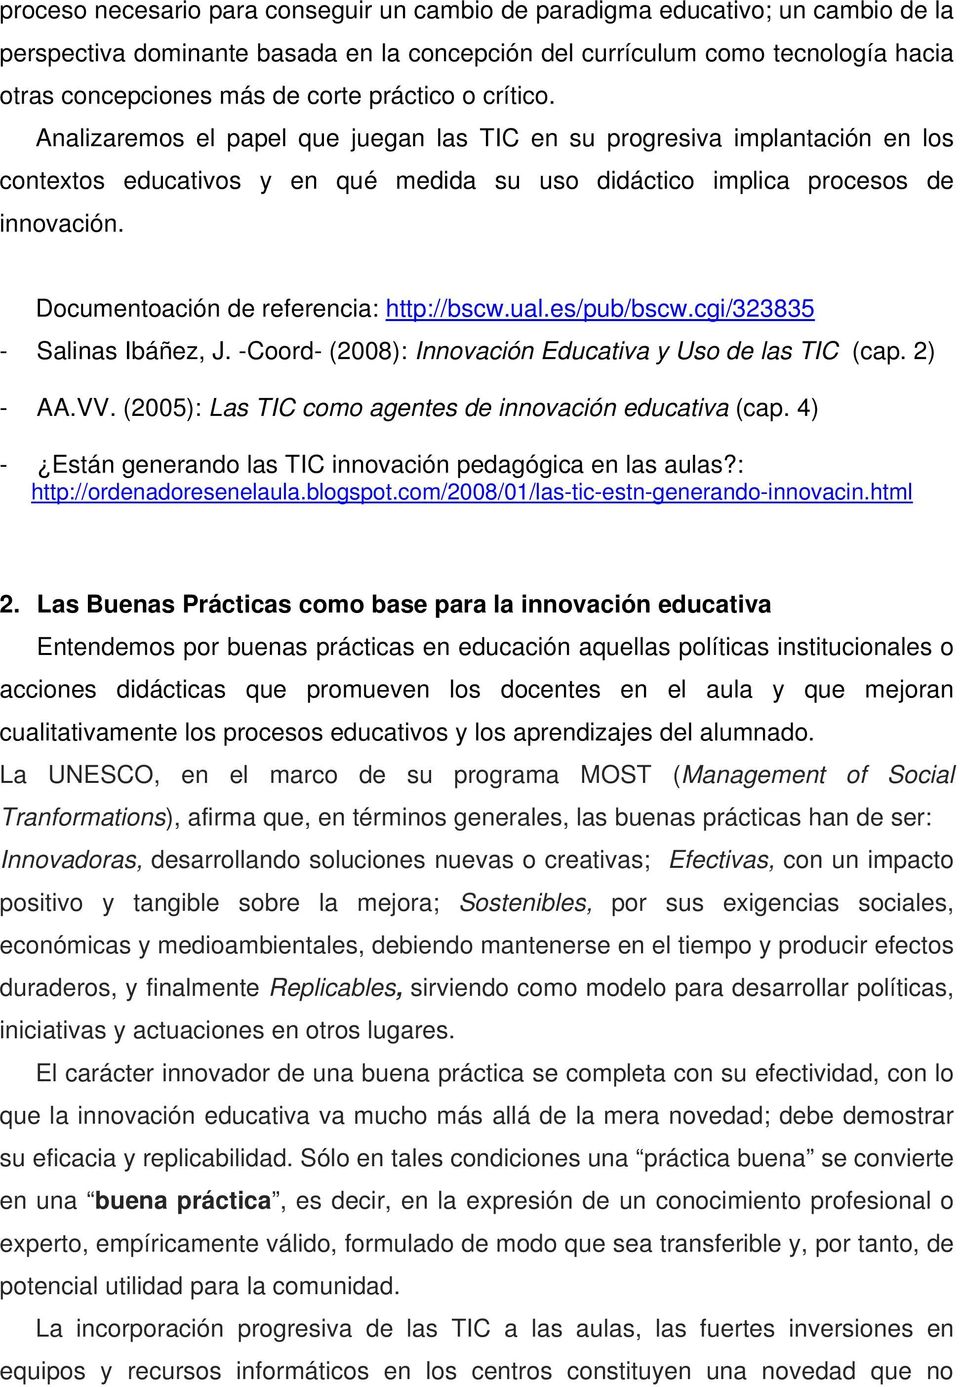 Documentoación de referencia: http://bscw.ual.es/pub/bscw.cgi/323835 - Salinas Ibáñez, J. -Coord- (2008): Innovación Educativa y Uso de las TIC (cap. 2) - AA.VV.